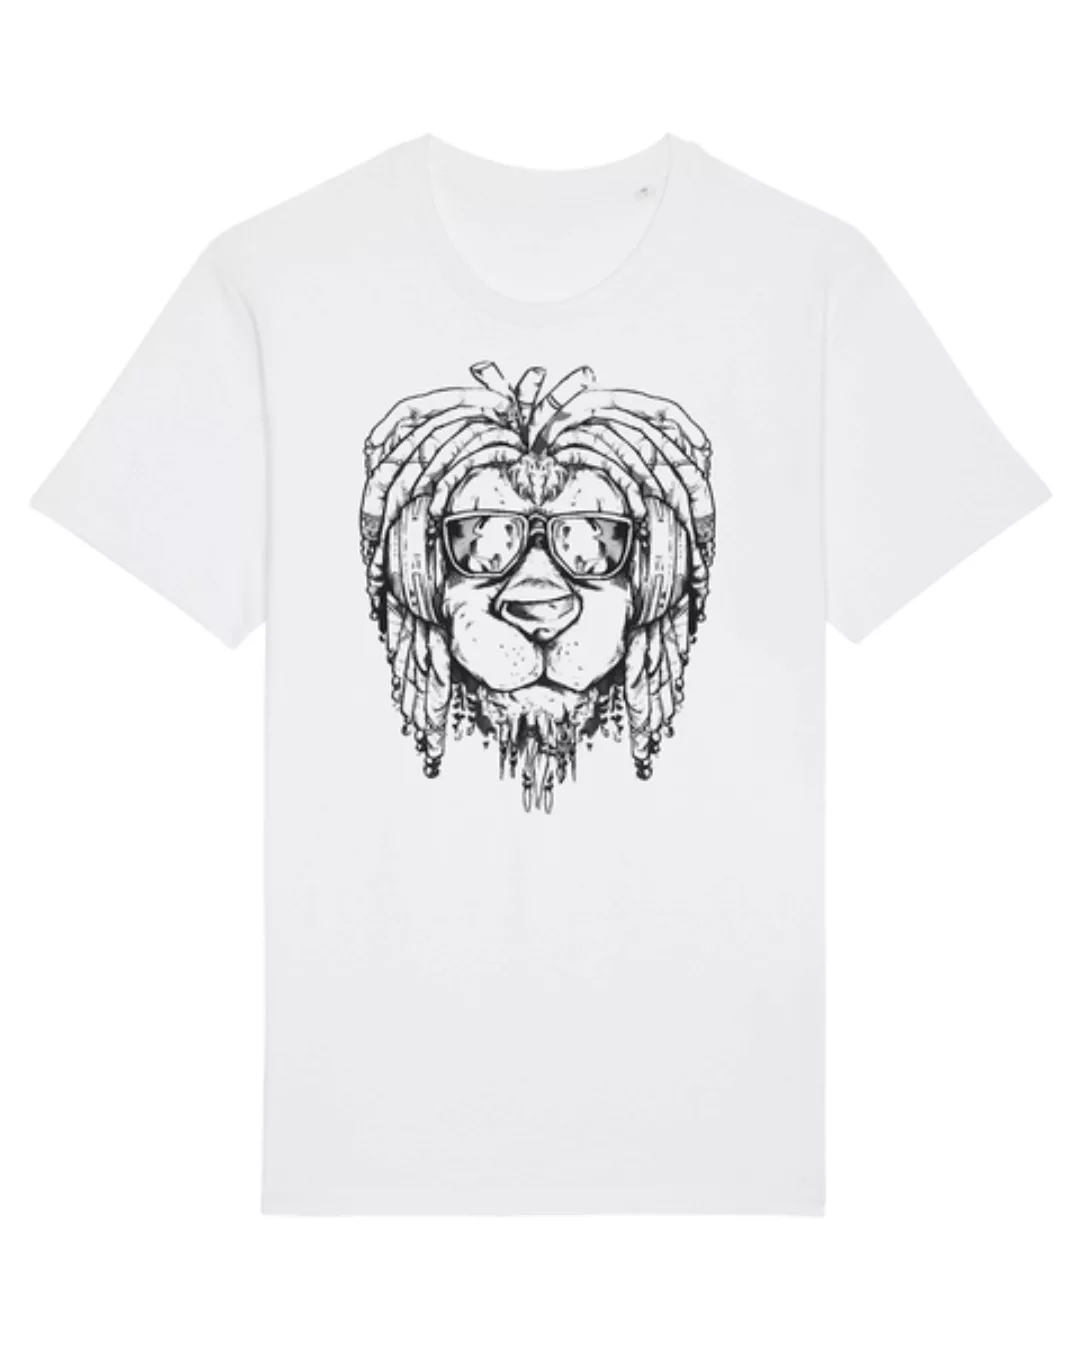 Rasta Lion | T-shirt Unisex günstig online kaufen